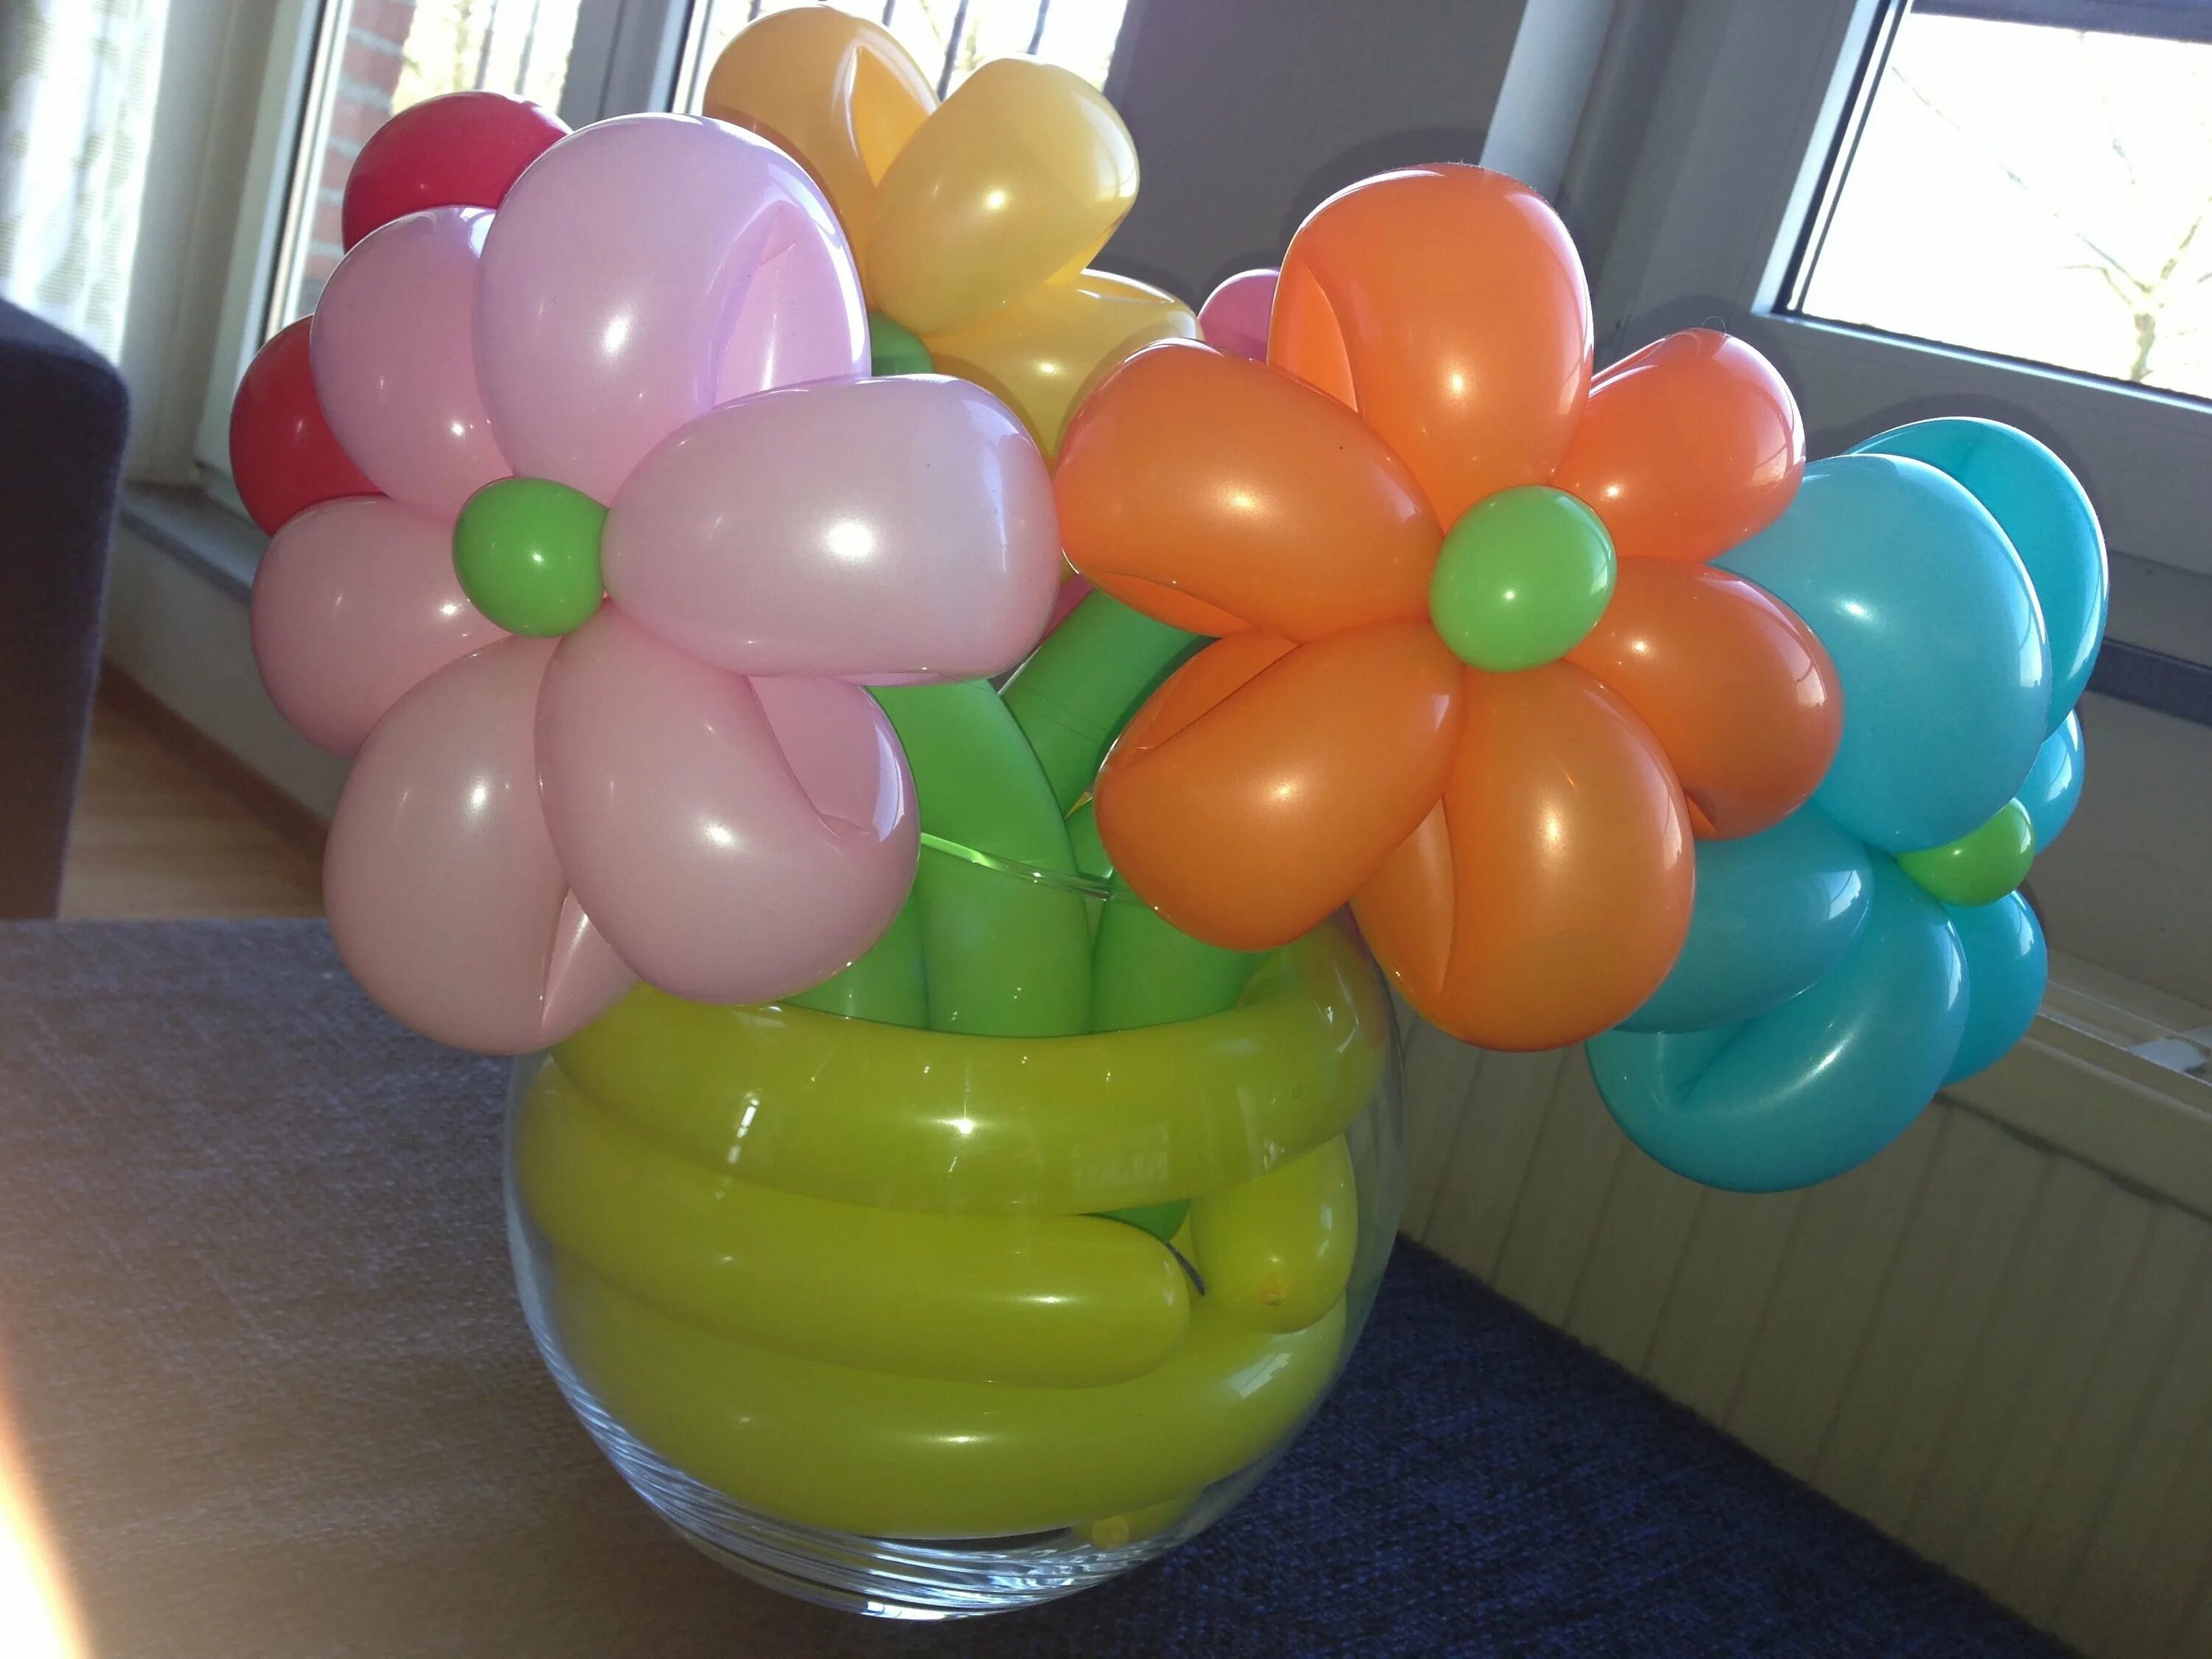 Аэродизайн шаров. Цветы из шаров. Цветы из круглых воздушных шаров. Цветы из шариков для моделирования. Цветы из шаров на подставке.